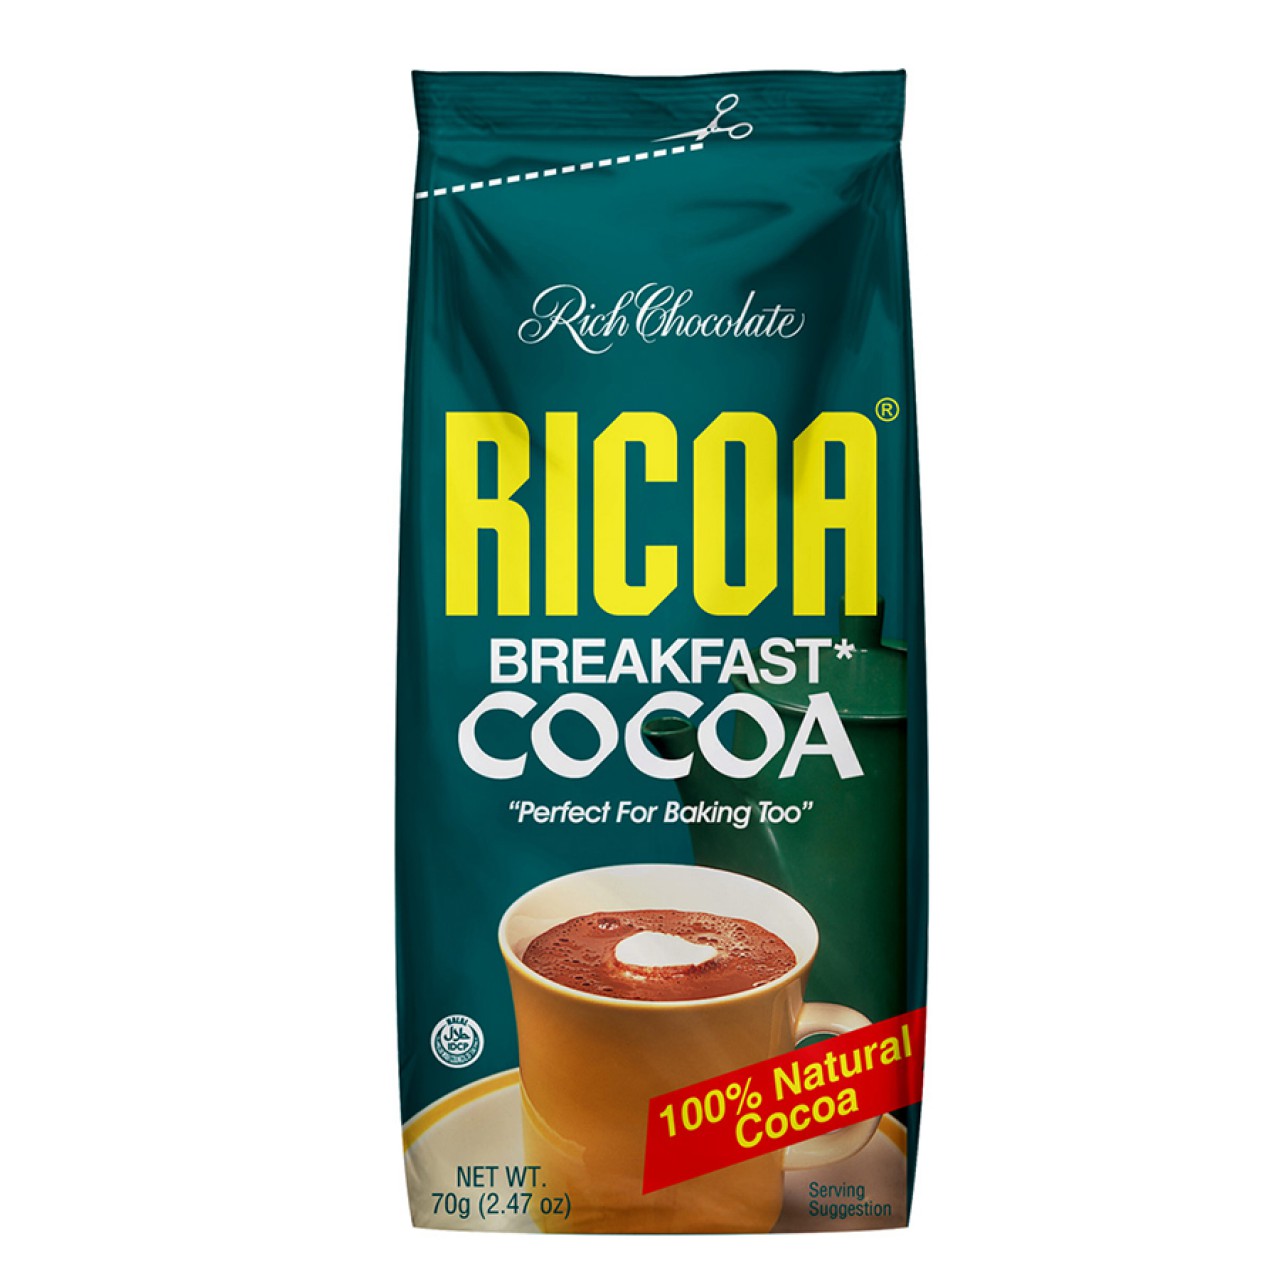 RICOA BREAKFAST COCOA 70G